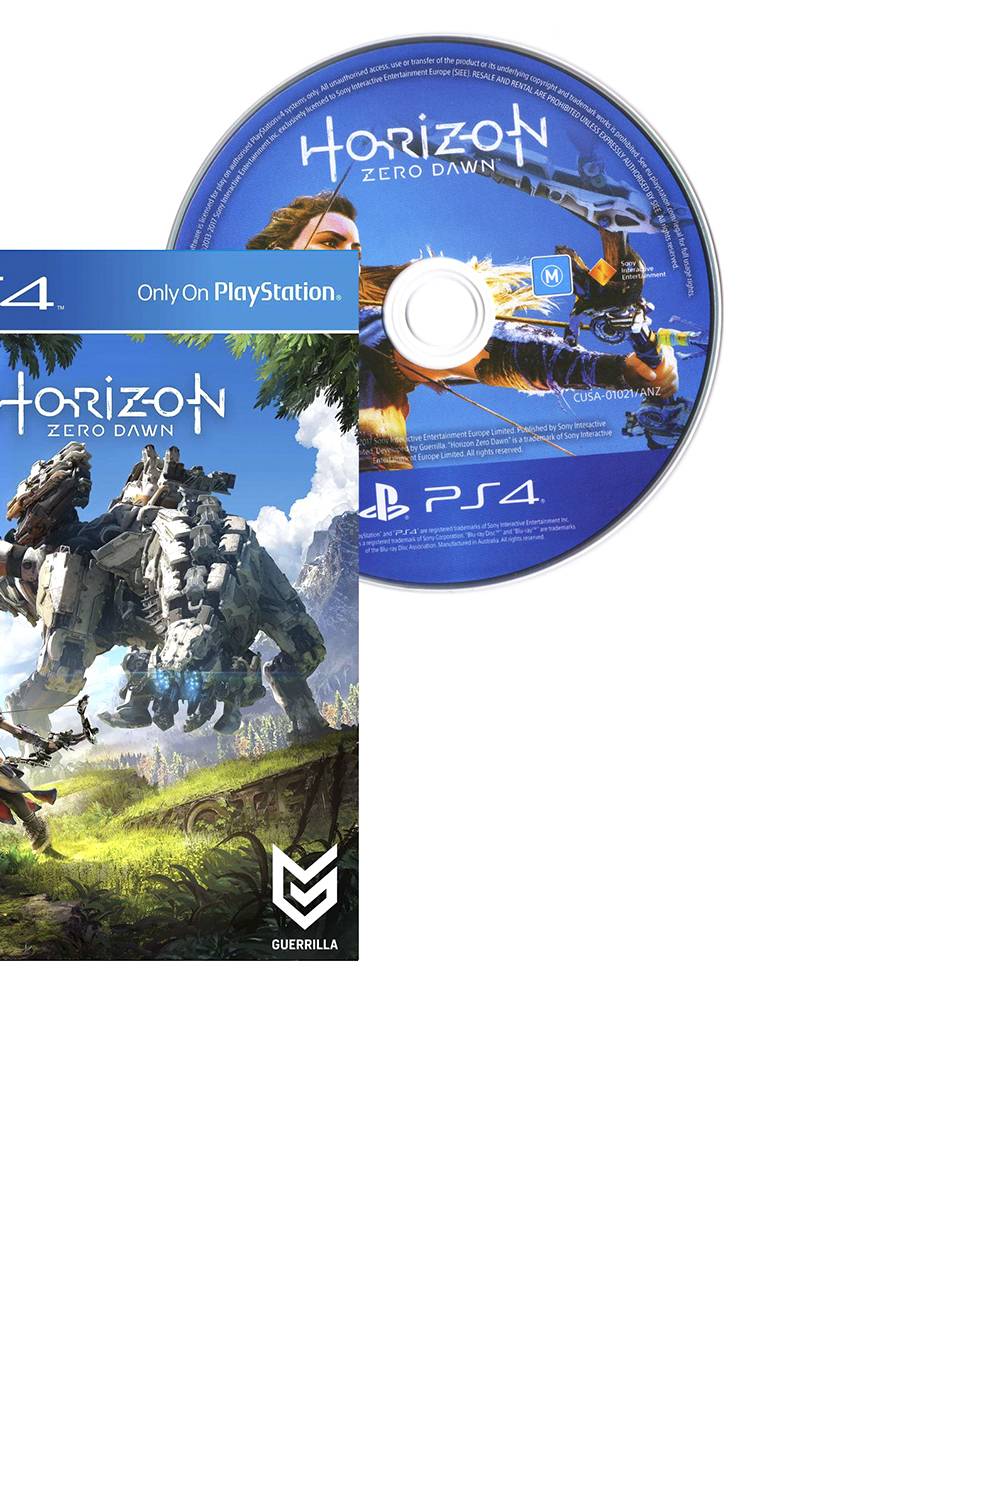 PLAYSTATION - Horizon Zero Dawn (en sobre)  (PS4)